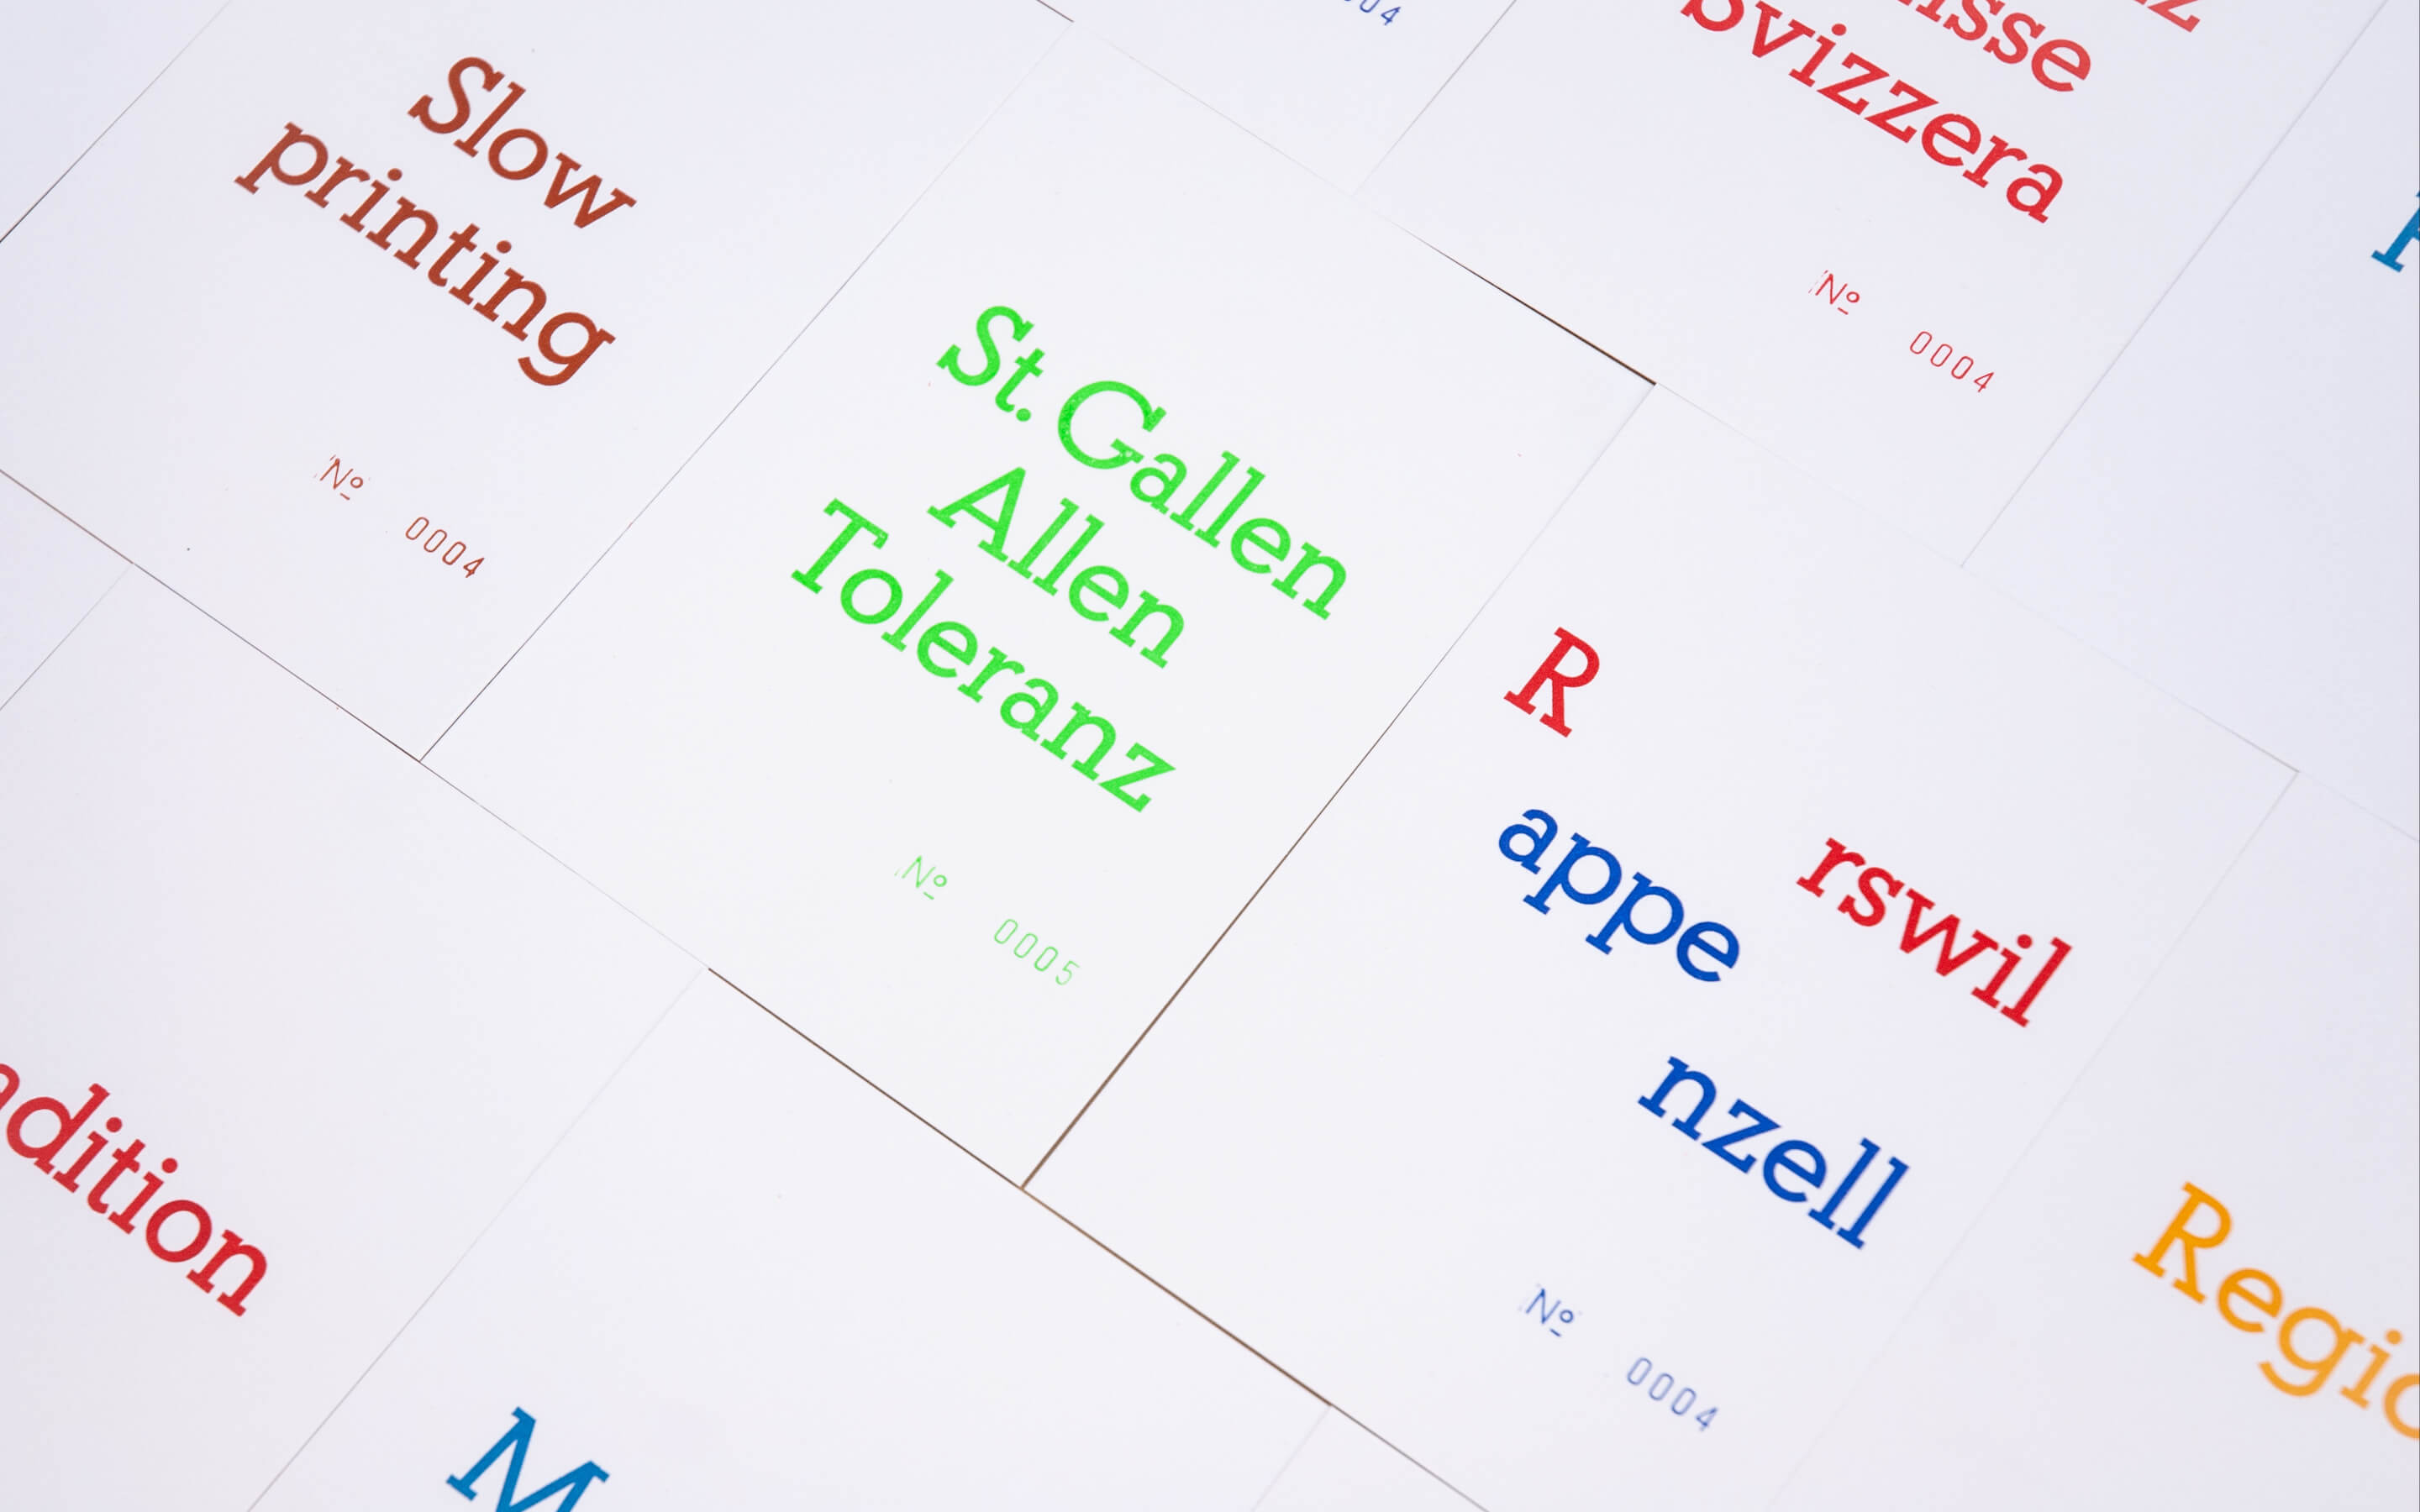 Buchdruck-Handsatz-St.Gallen-Antiqua-Materica-Postkarten-Parizzi-Buchdruck-und-Gebrauchsgrafik